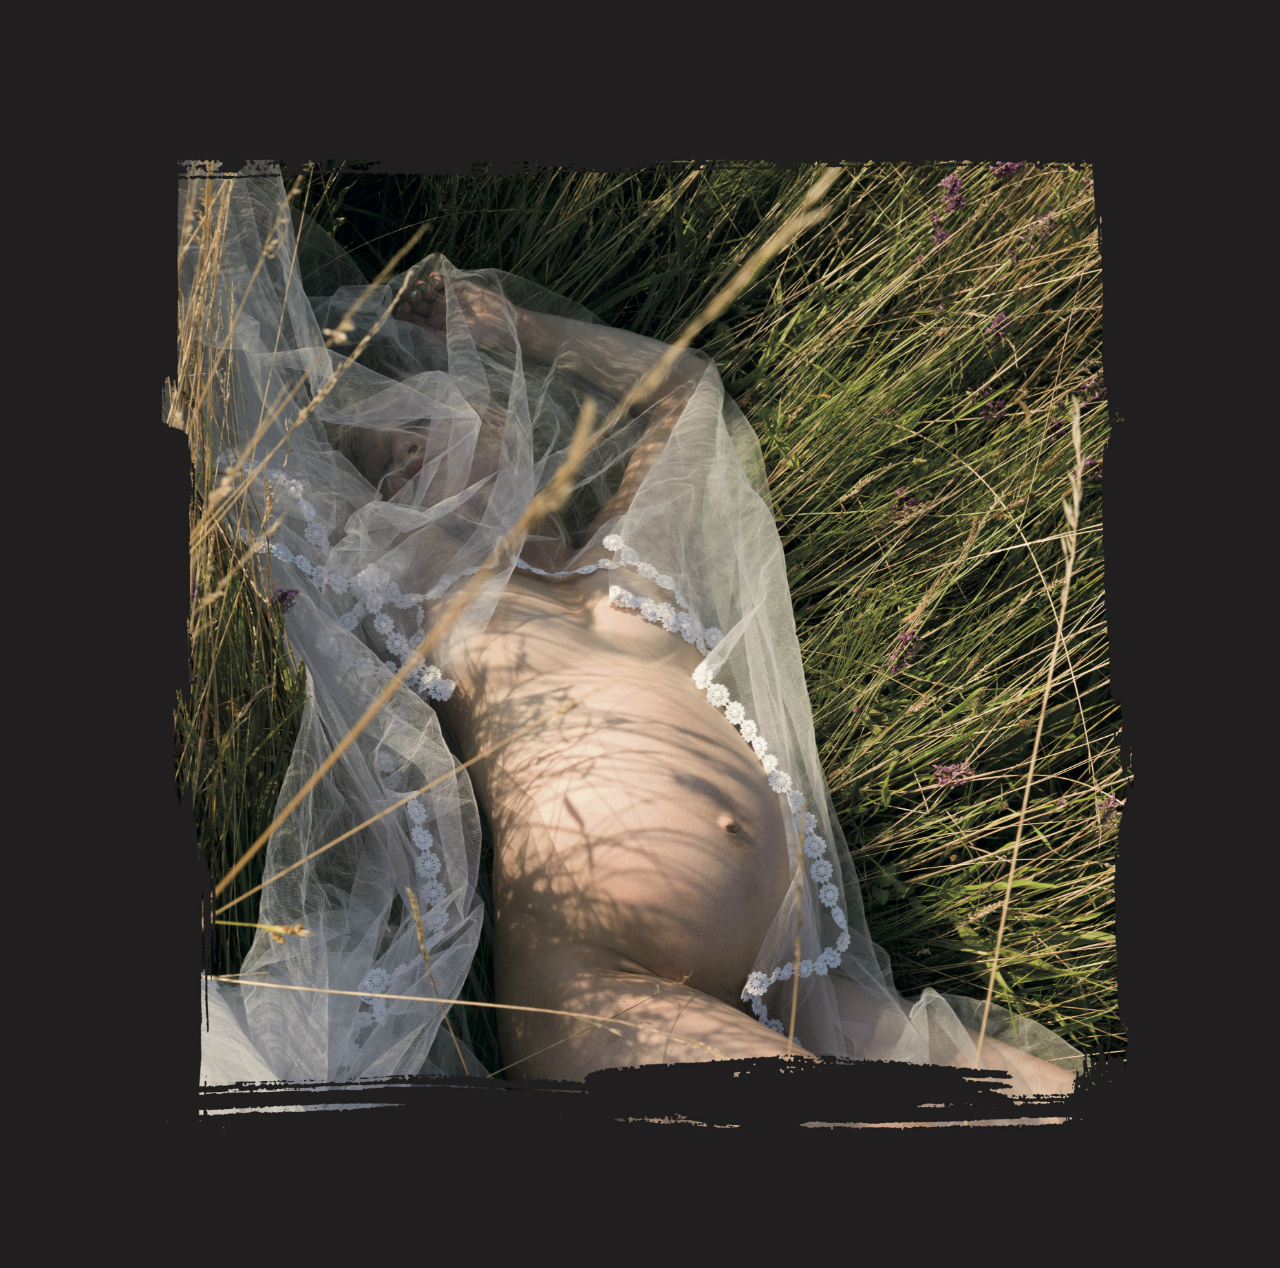 Plattencover von "Messiah", man sieht Teresa Rotschopf schwanger in der Wiese liegen